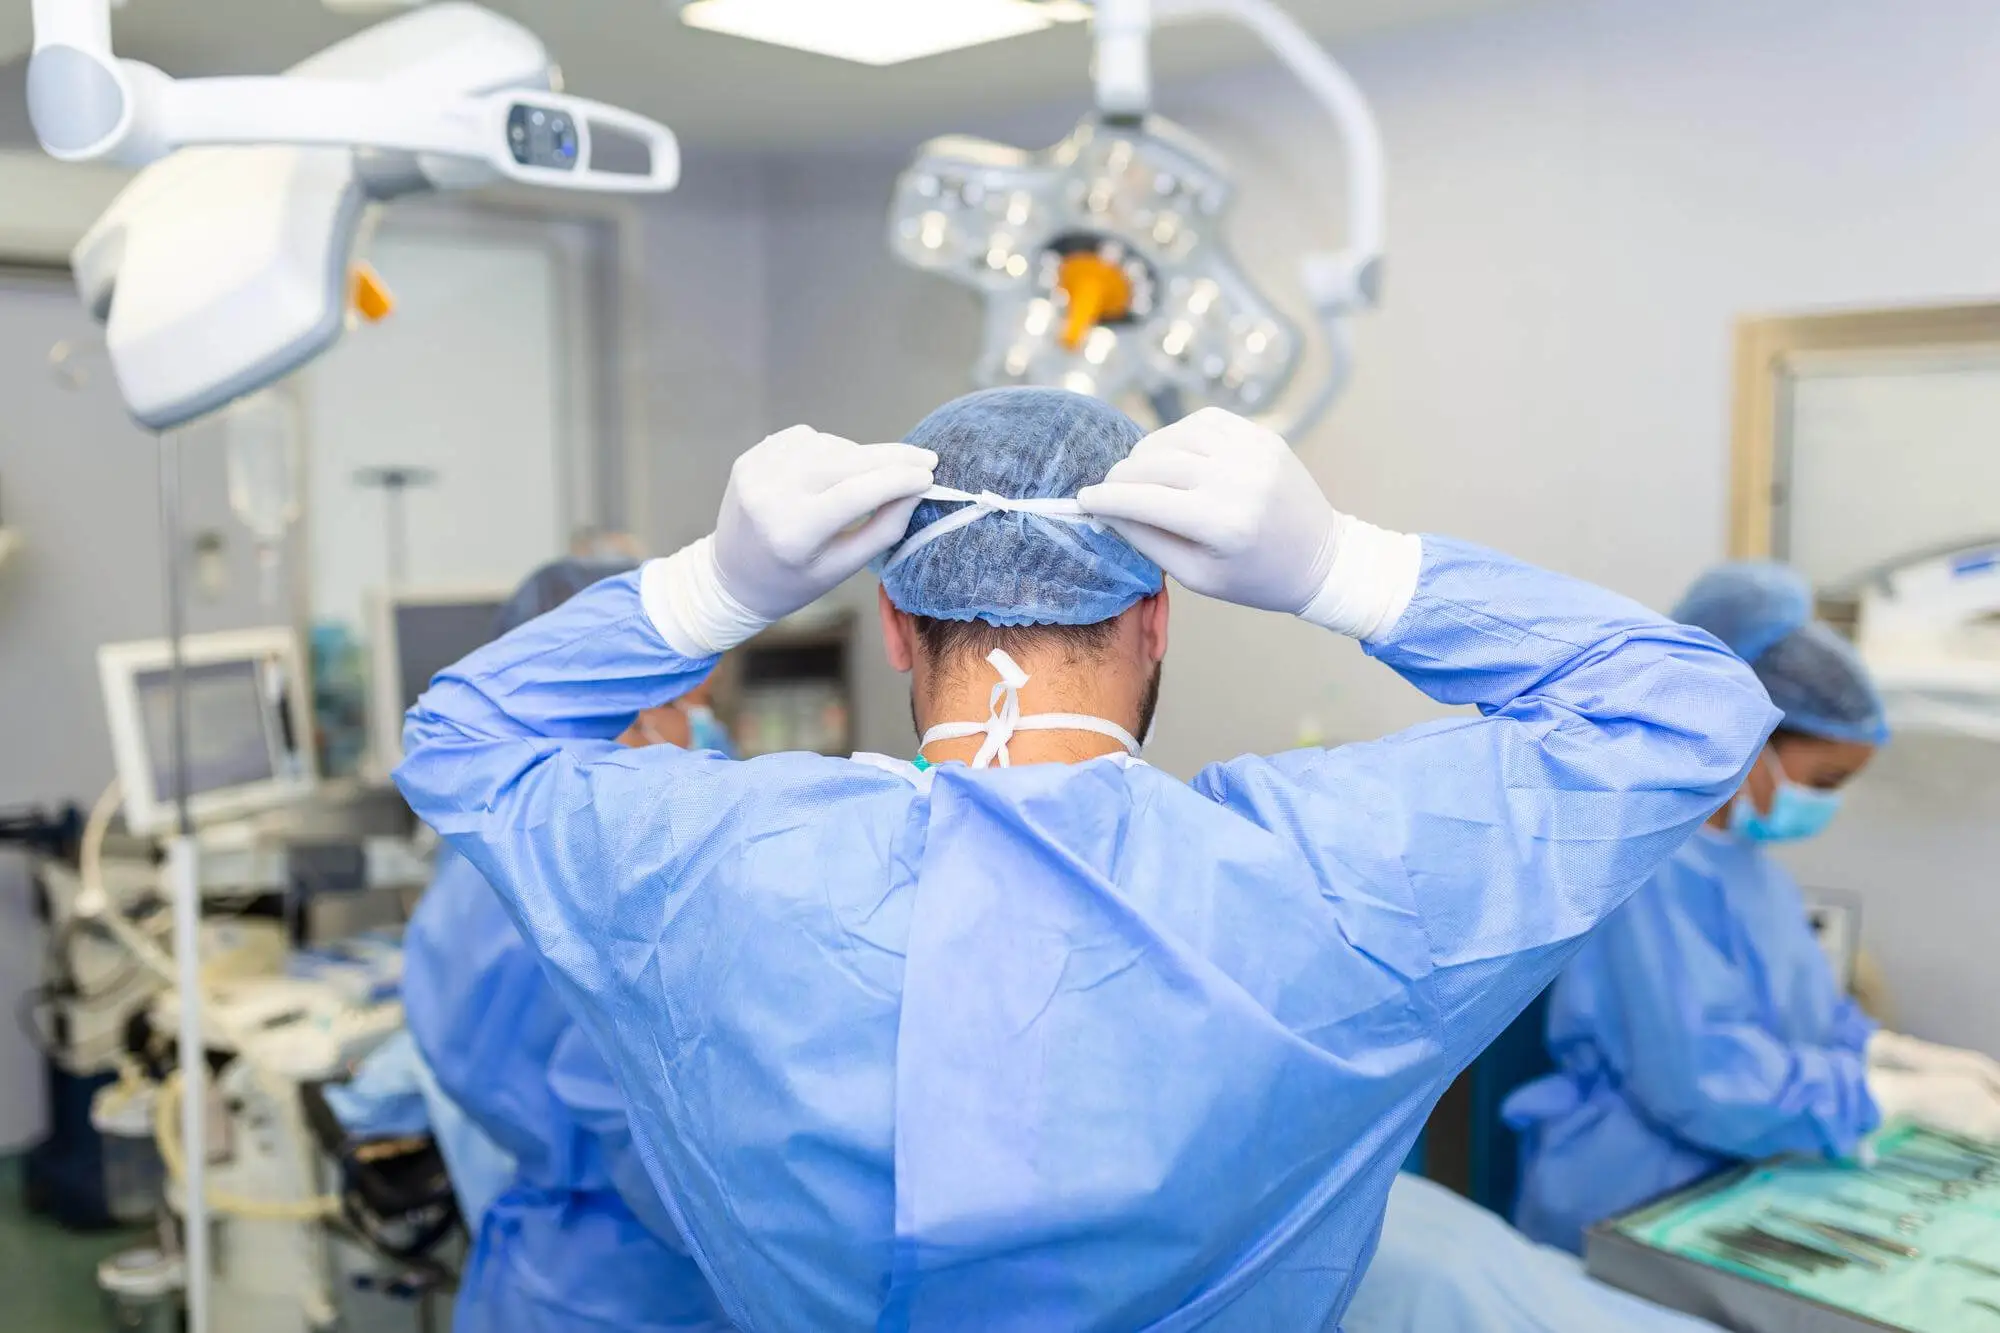 Radiocirurgia Cyberknifer pelo plano de saúde